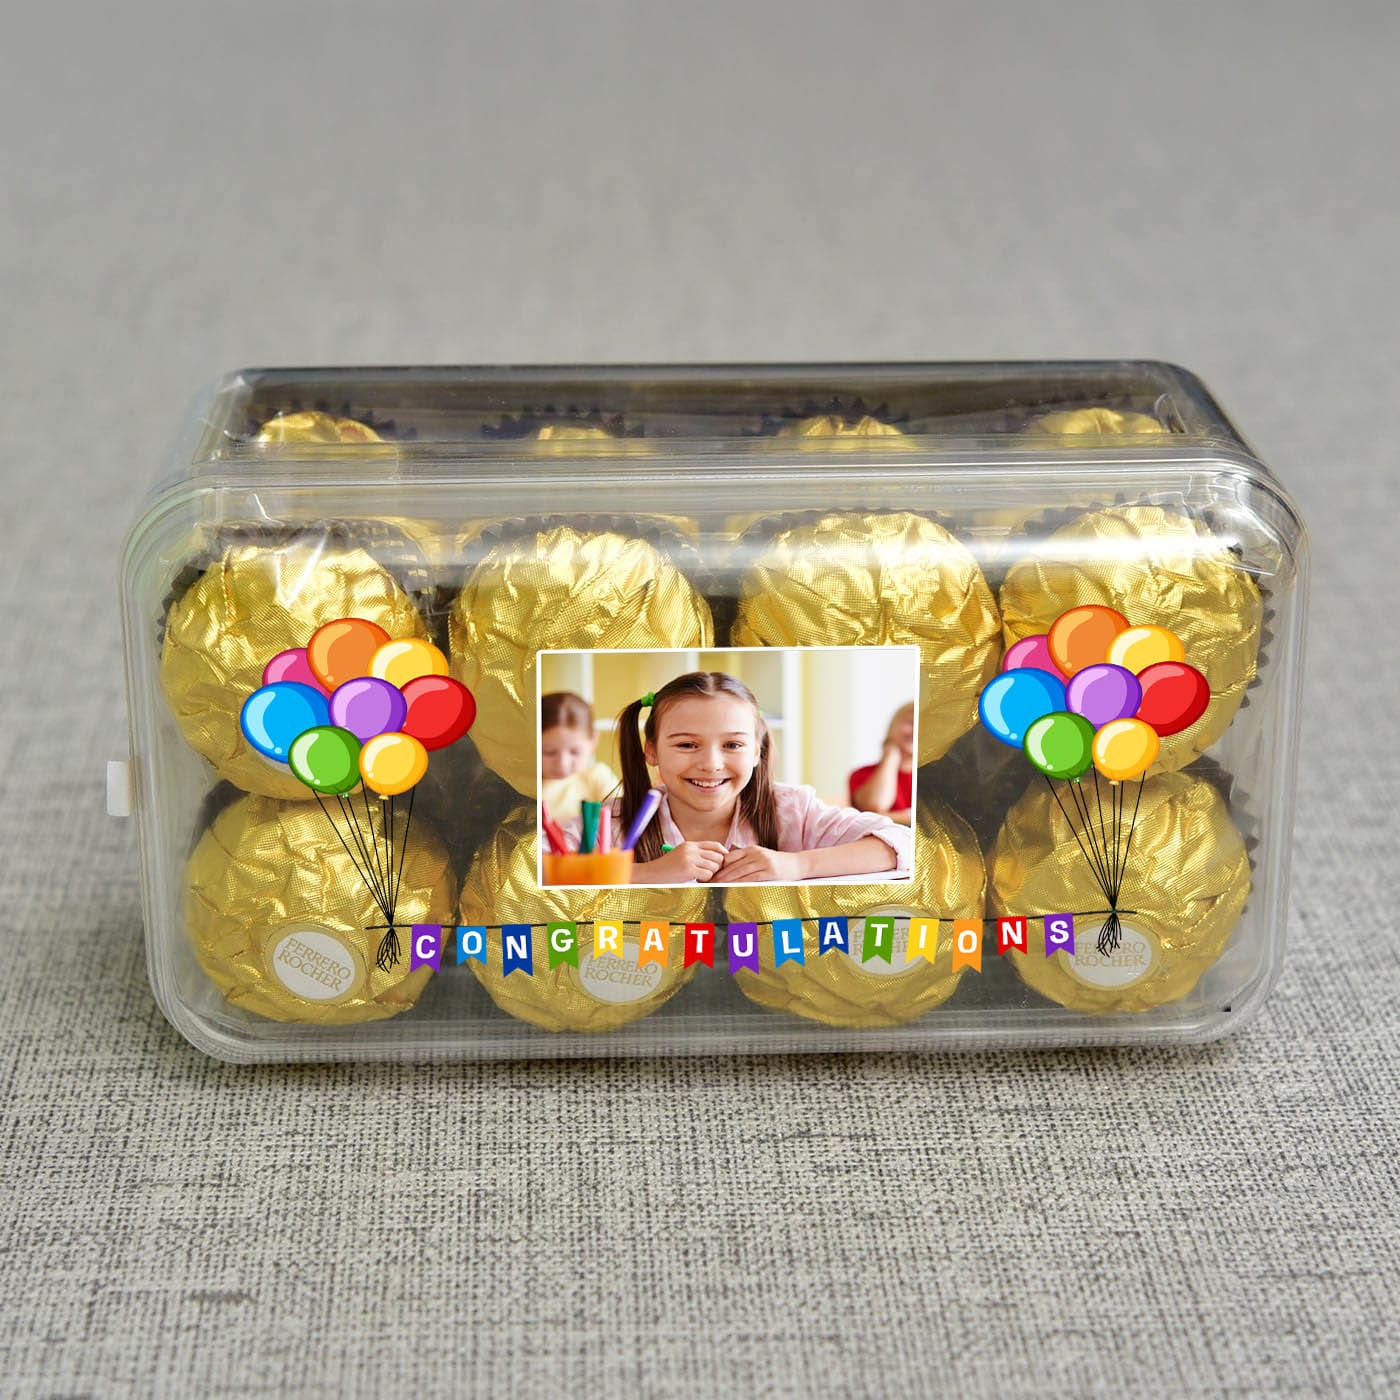 Ferrero Rocher Chocolates in Personalized Box